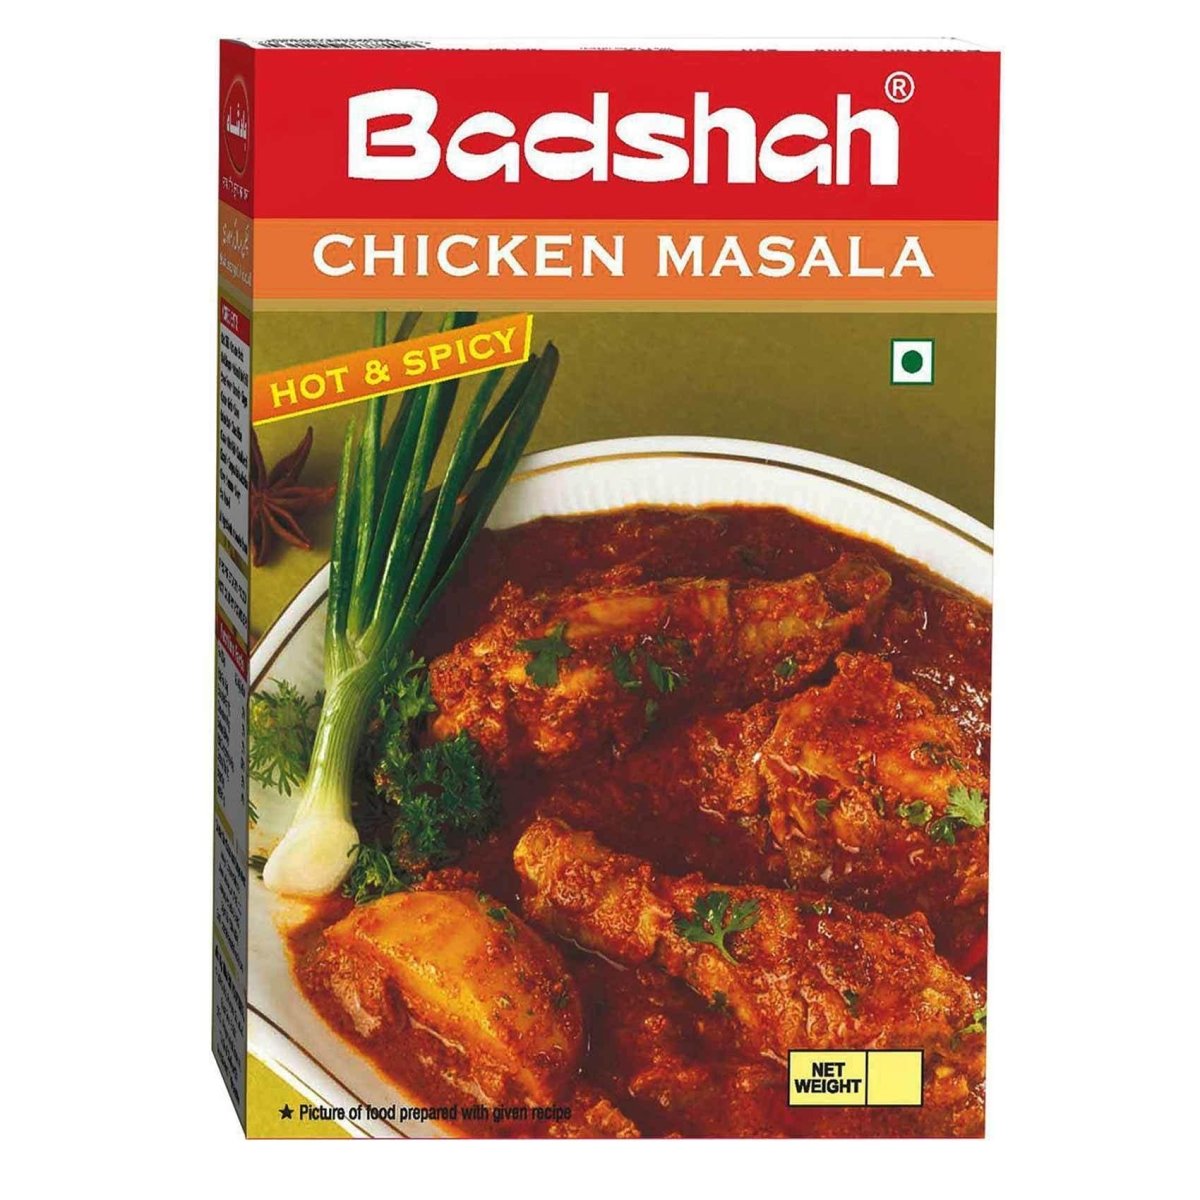 Badshah Hot & Spicy Chicken Masala - Tulsidas